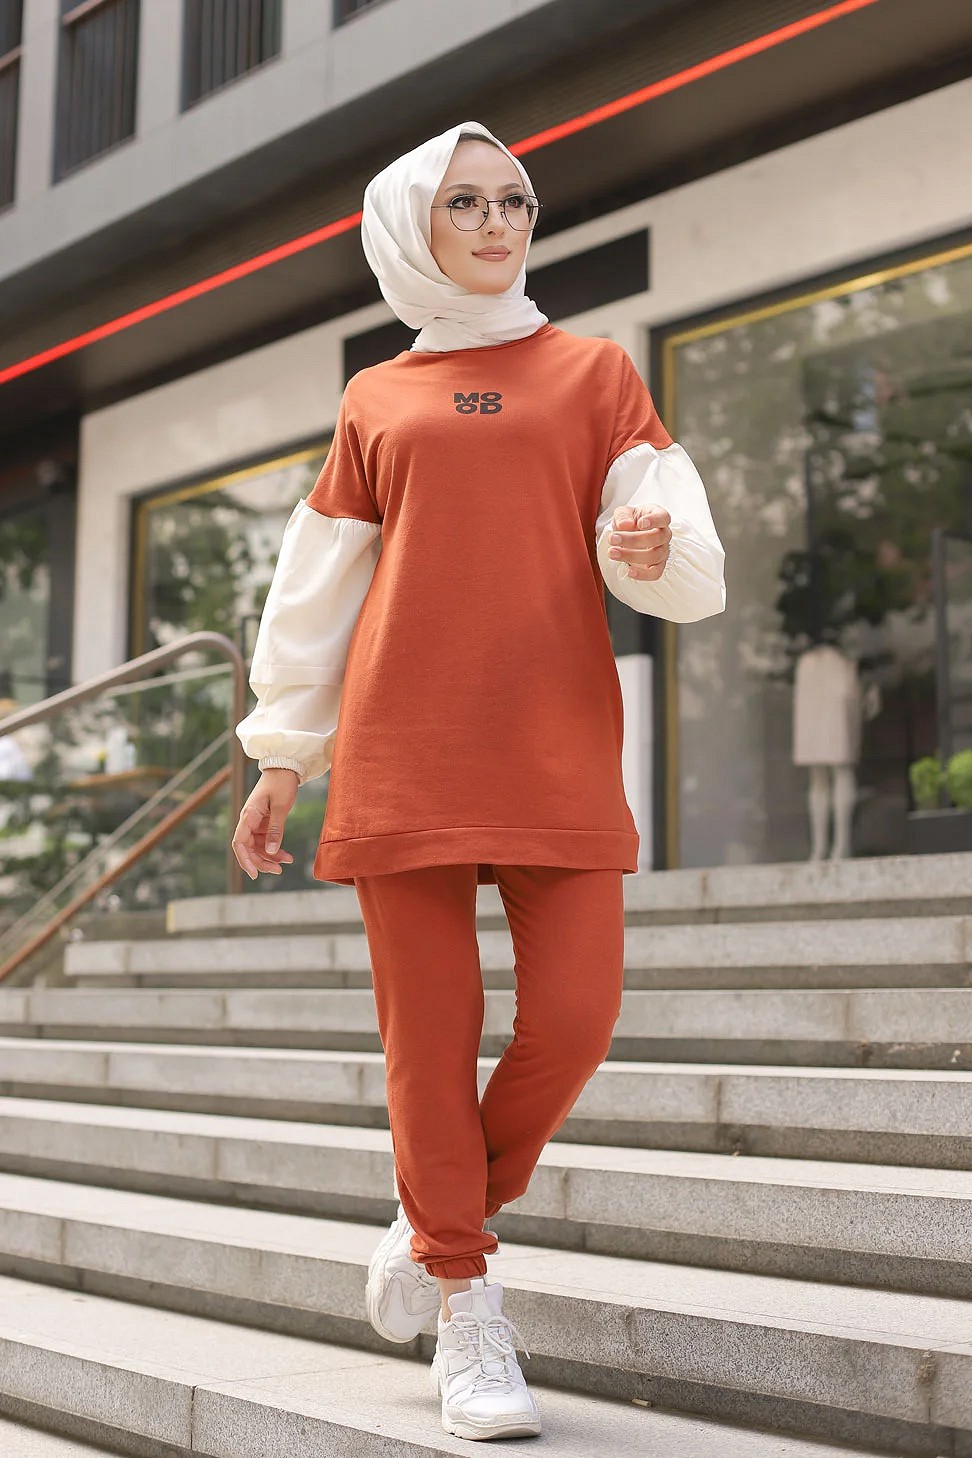 Amelis - Survêtement original 2 pièces (Hijab Sport pour femme